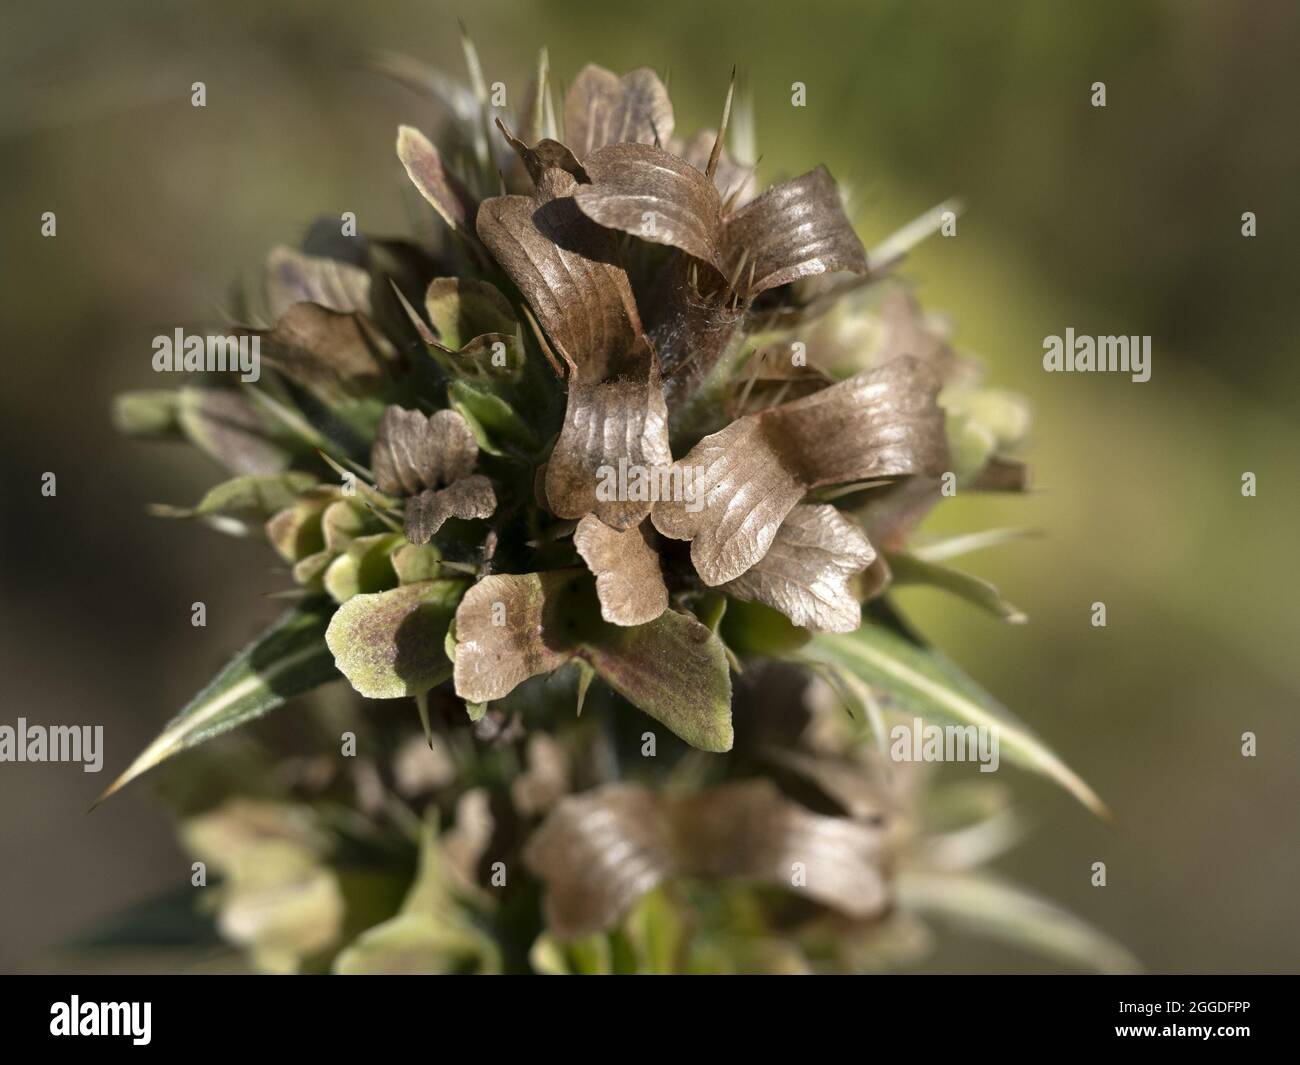 morina longifolia whorlflower flower close up detail Stock Photo